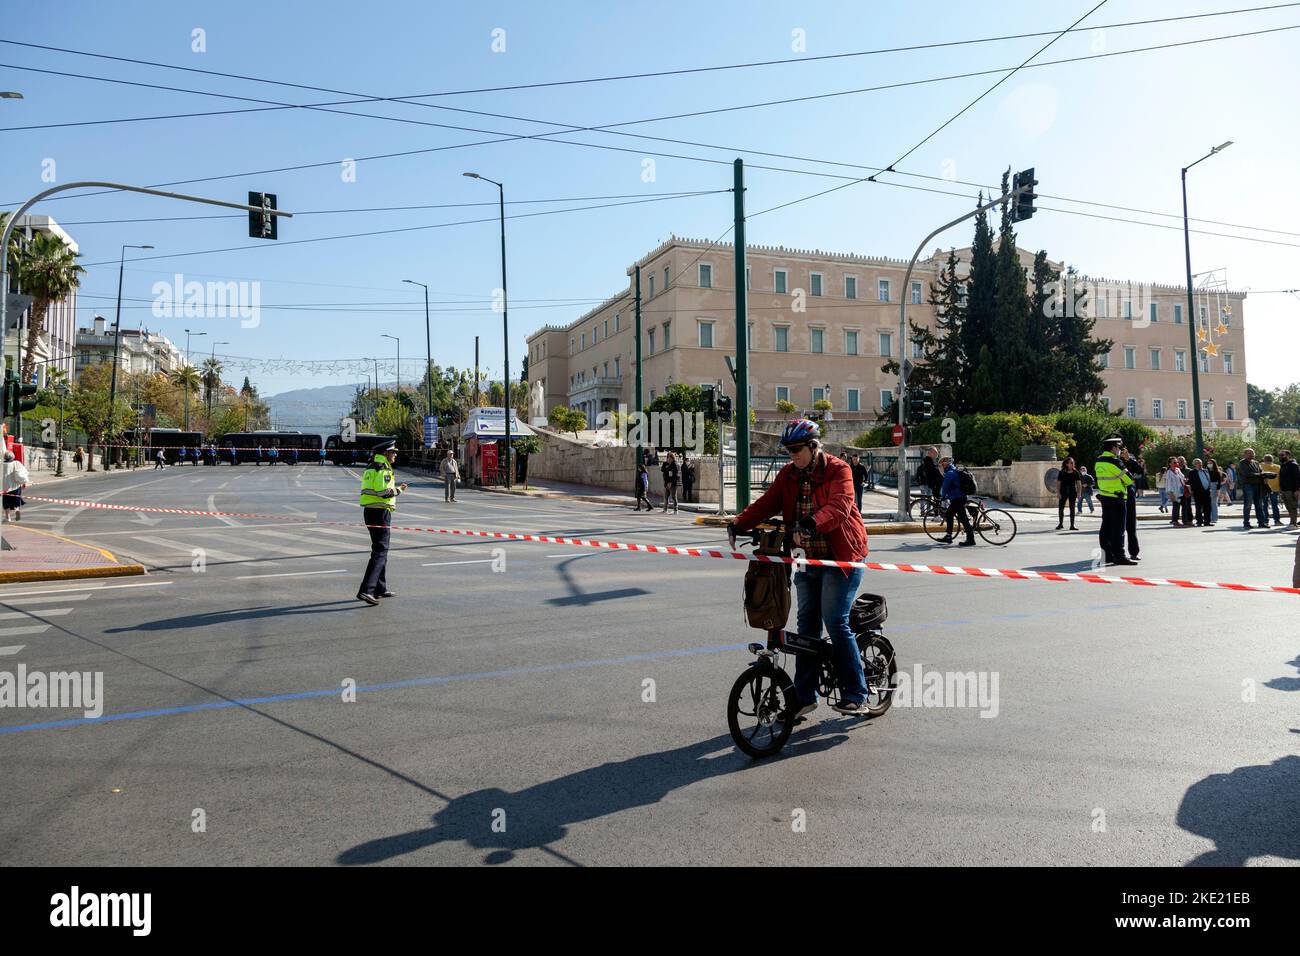 Le vieil homme qui fait du vélo rencontre un ruban rouge interdisant la circulation en raison des restrictions imposées par la police lors d'une manifestation anti-gouvernementale massive. Banque D'Images